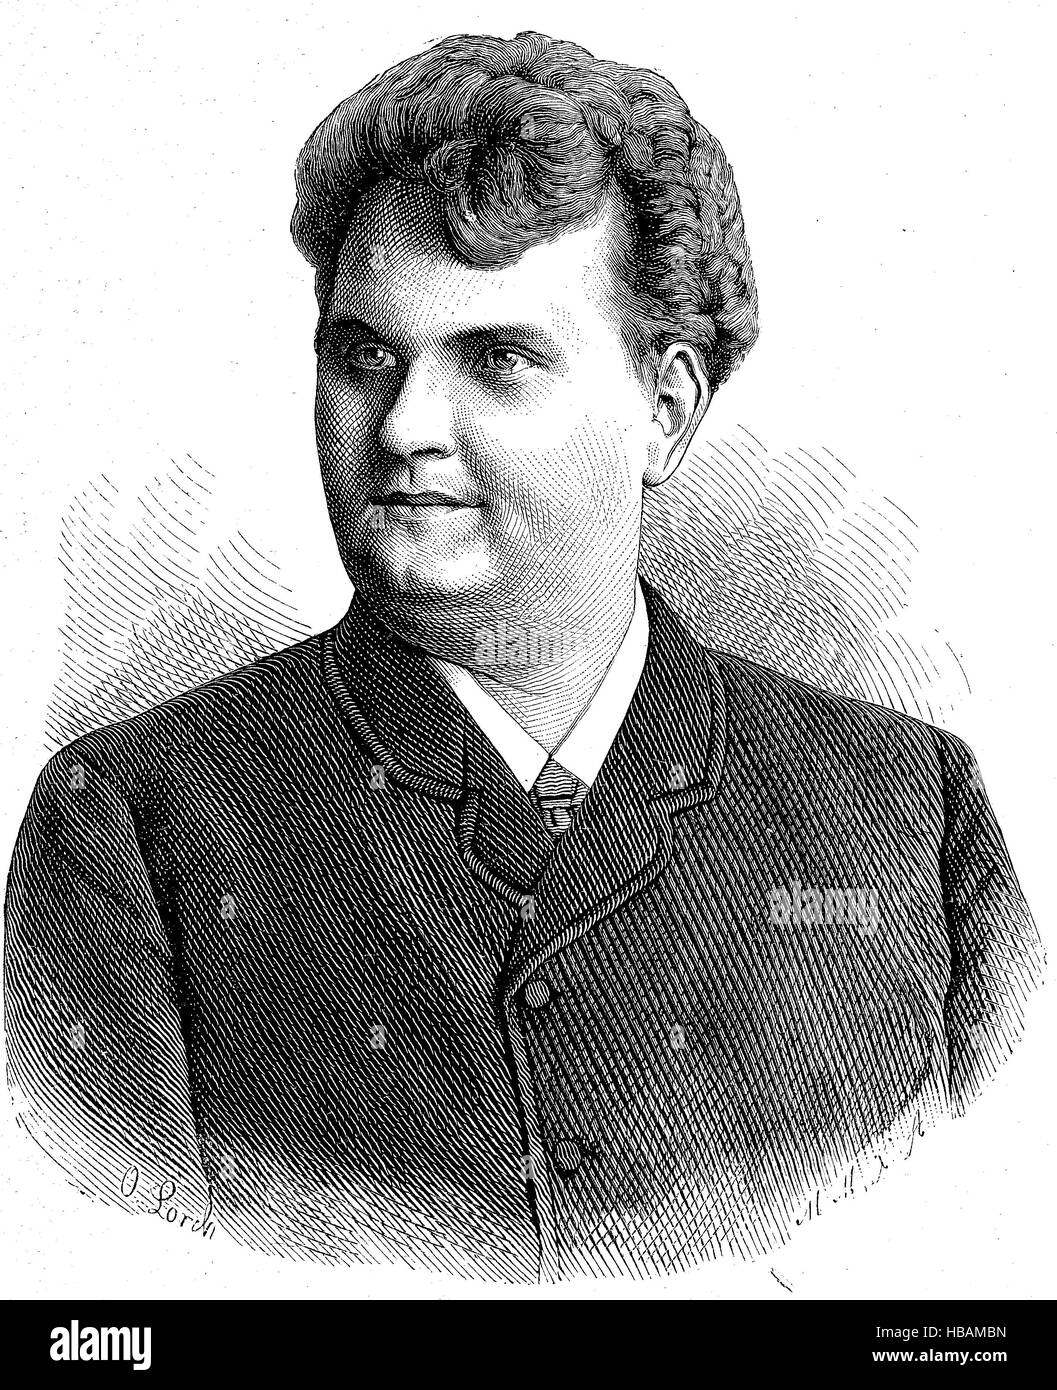 Emil Karl Goetze, 19. Juli 1856 - 28. September 1901, German opera singer, hictorical illustration from 1880 Stock Photo